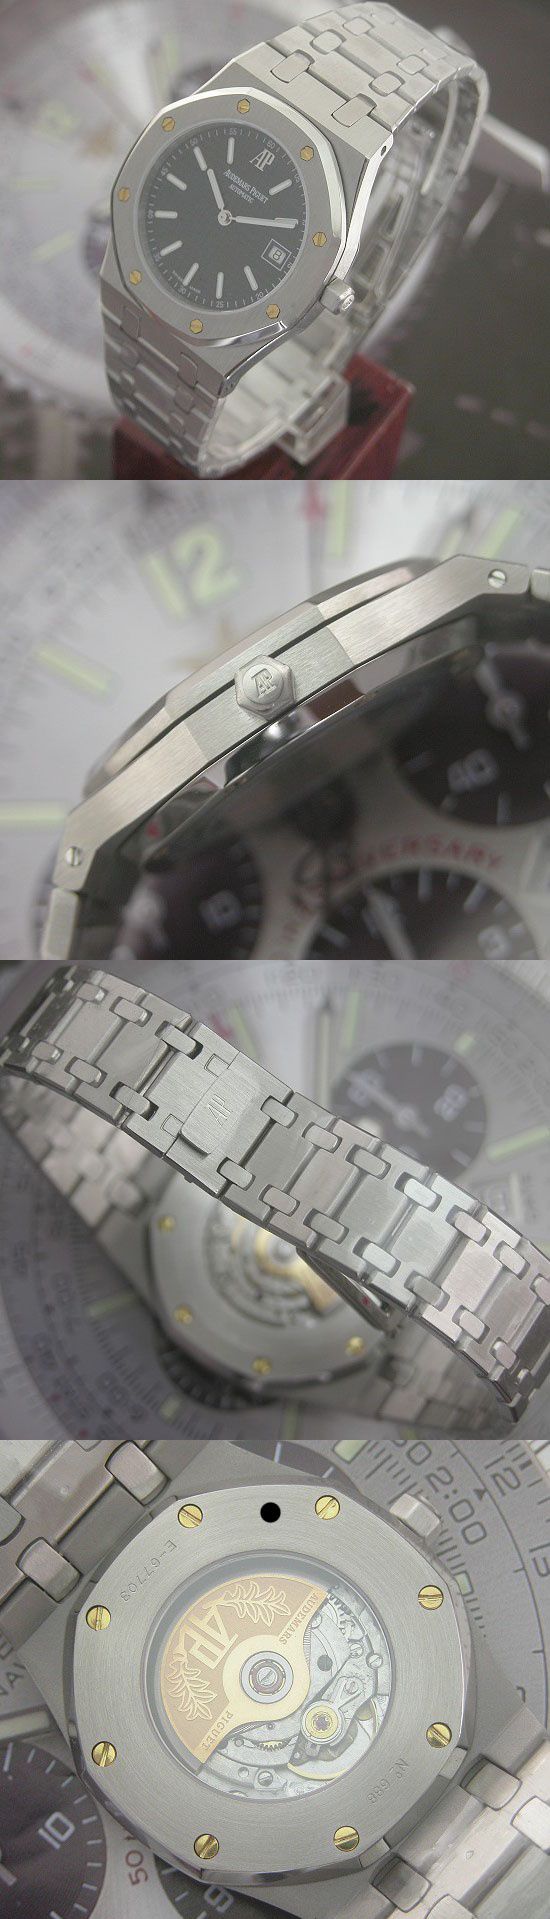 おしゃれなブランド時計がオーデマピゲ-ロイヤルオーク-AUDEMARS PIGUET-15300ST.OO.1220ST.02-aj-男性用を提供します.